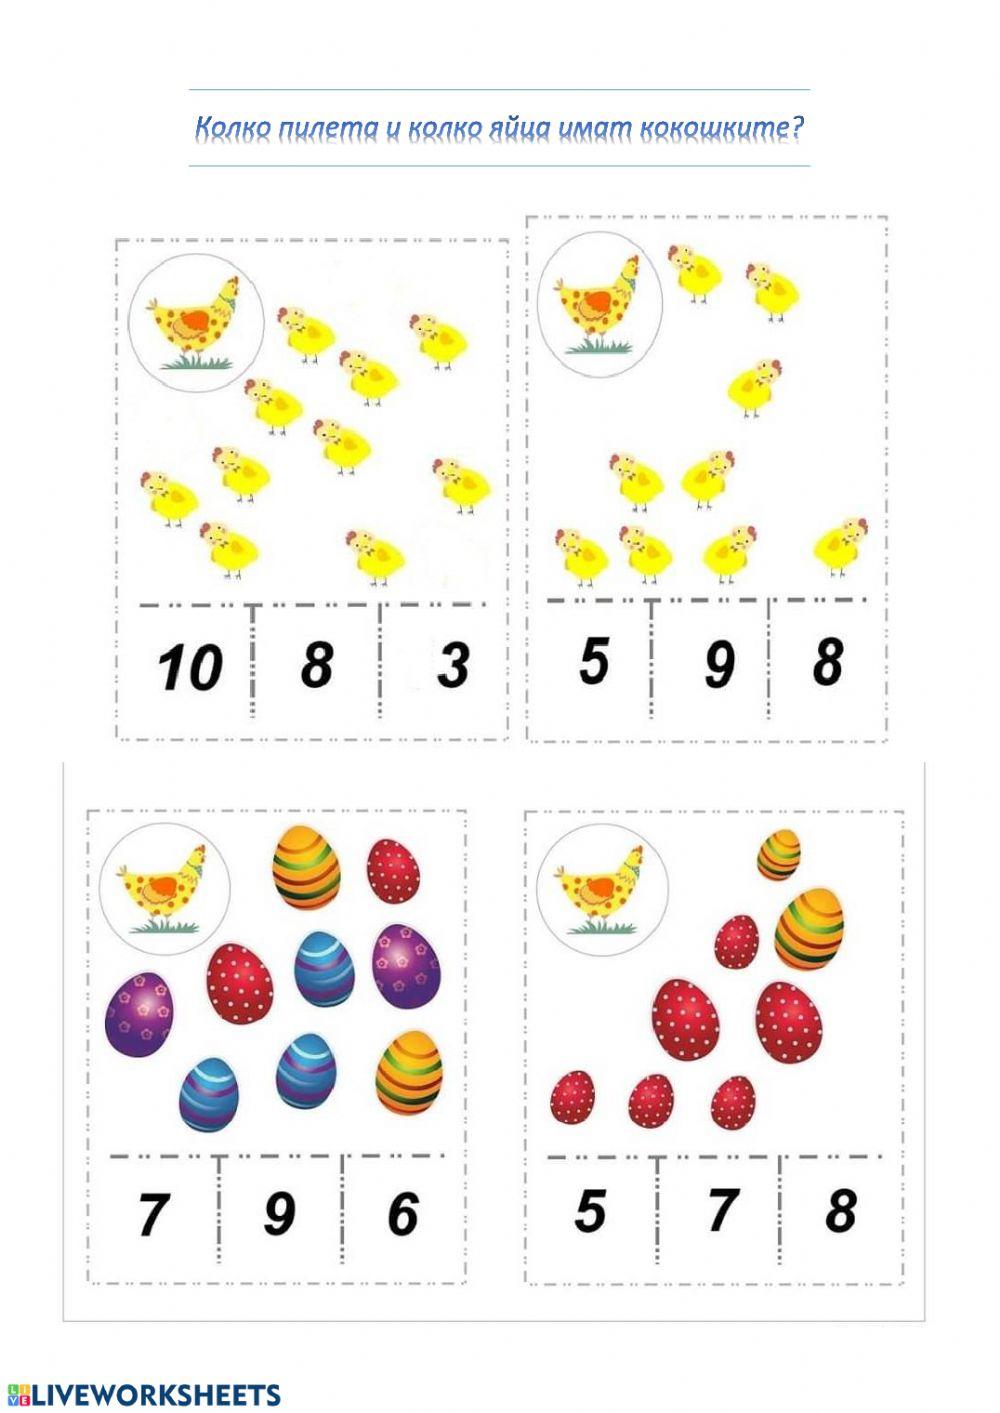 По колко са пилетата и яйцата на кокошките?